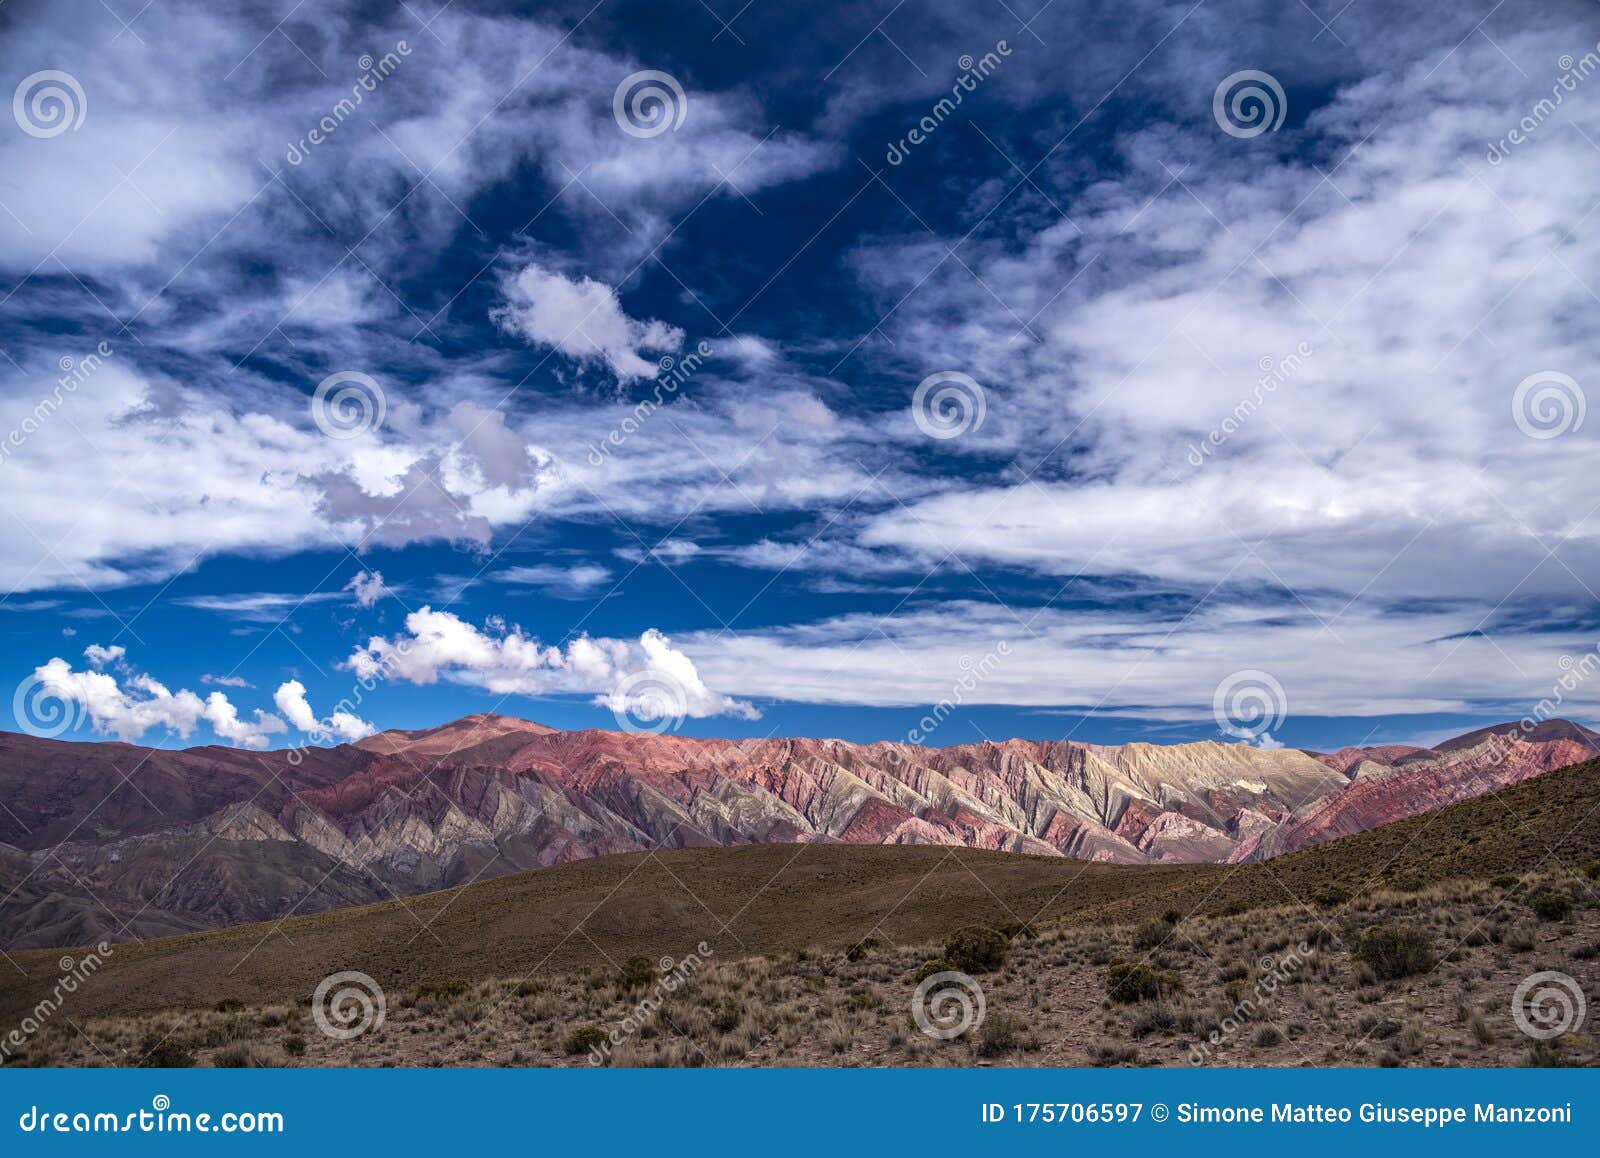 serranias del hornocal, cerro de los 14 colores, humahuaca, argentina